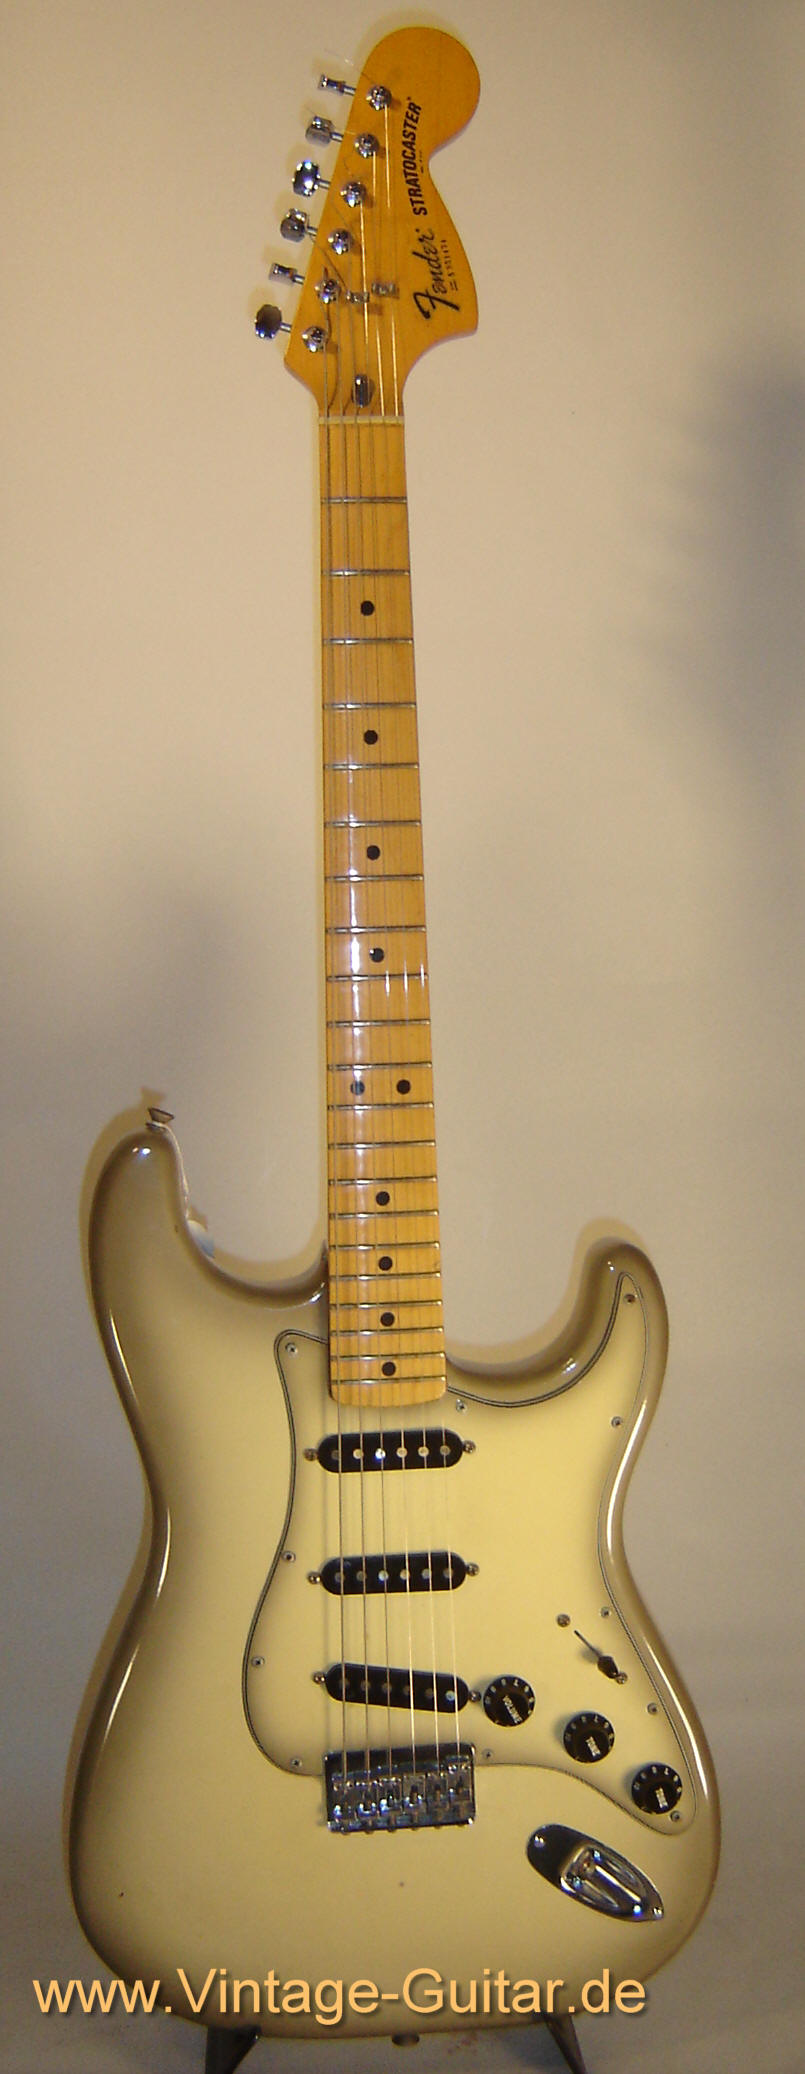 Fender-Stratocaster-Antigua-1979.jpg